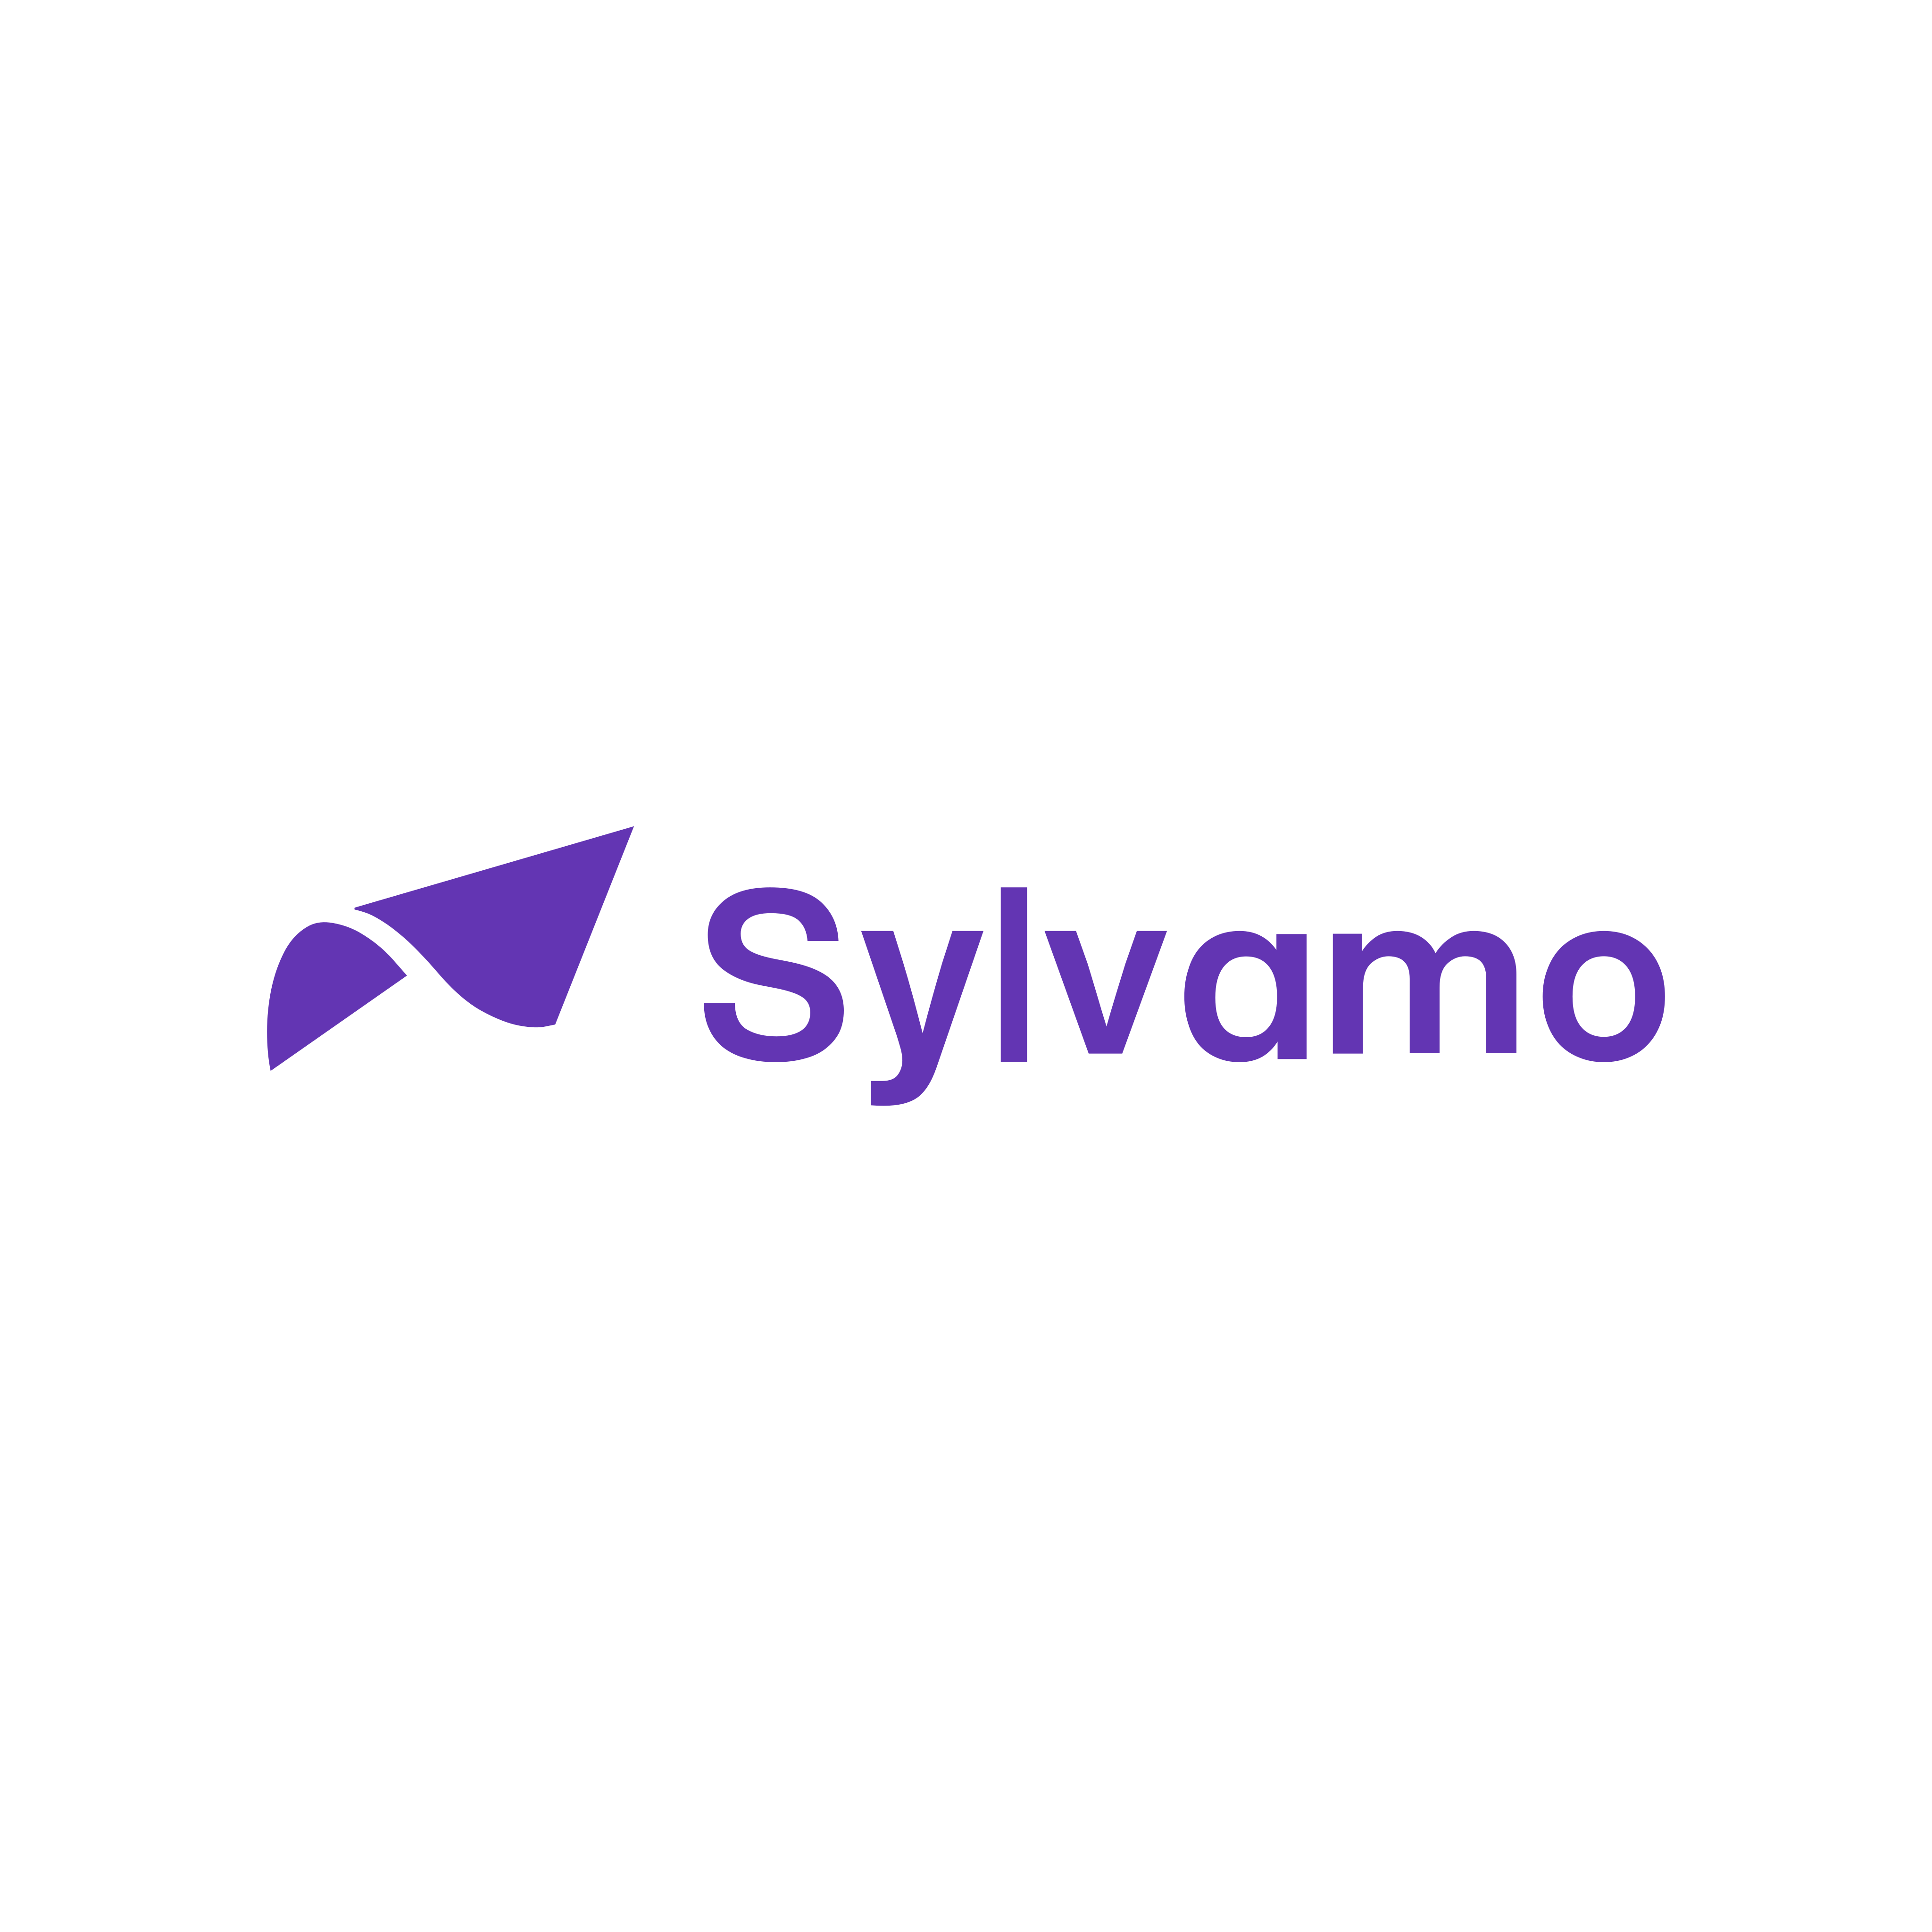 sylvamo logo 0 - Sylvamo Logo